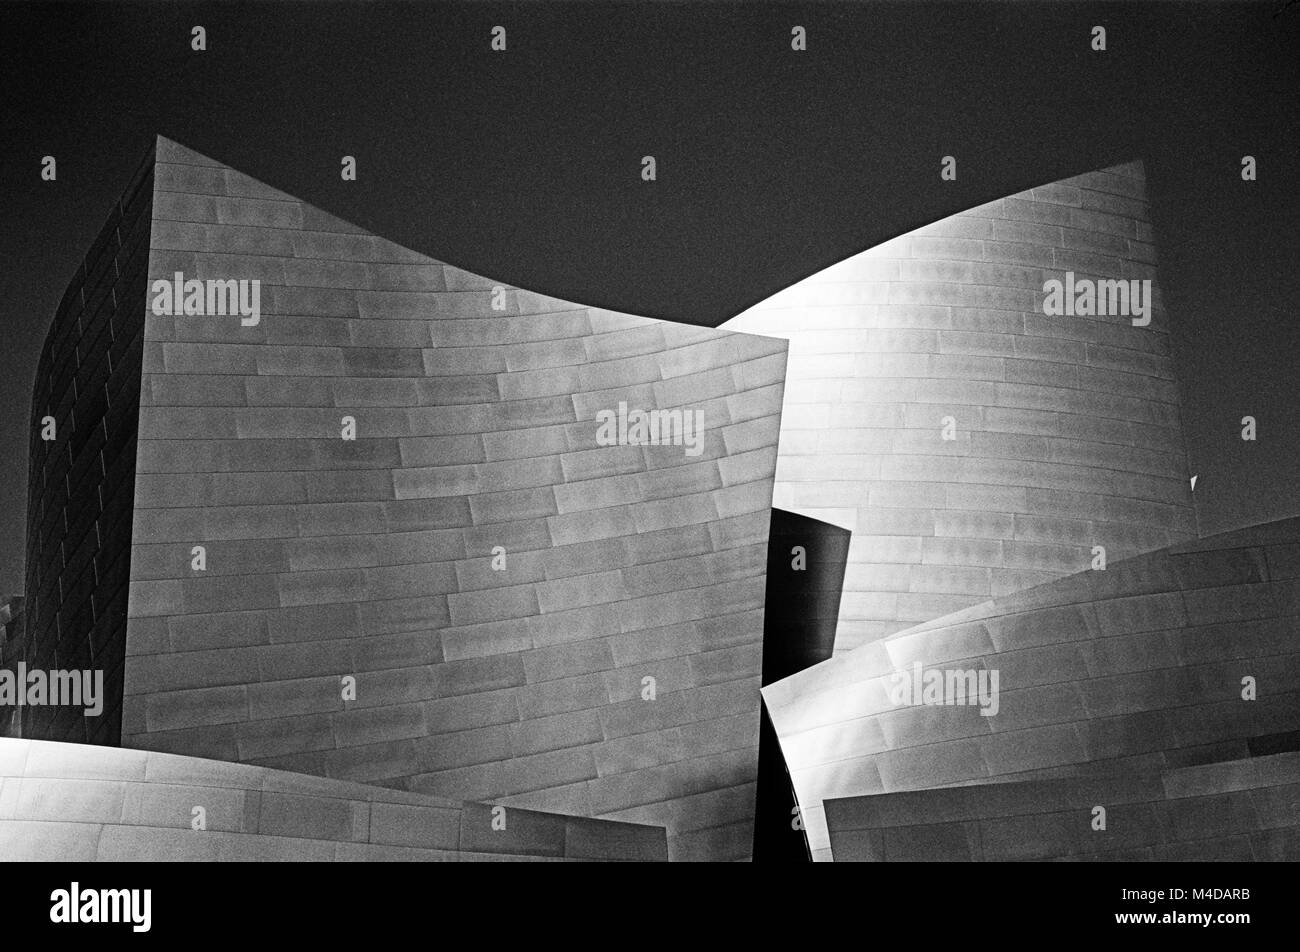 LOS ANGELES, USA - November 03, 2014: Zwei der Türme des Disney Philharmonic Hall in Los Angeles, entworfen von Frank Gehry, Glitzern in Stockfoto